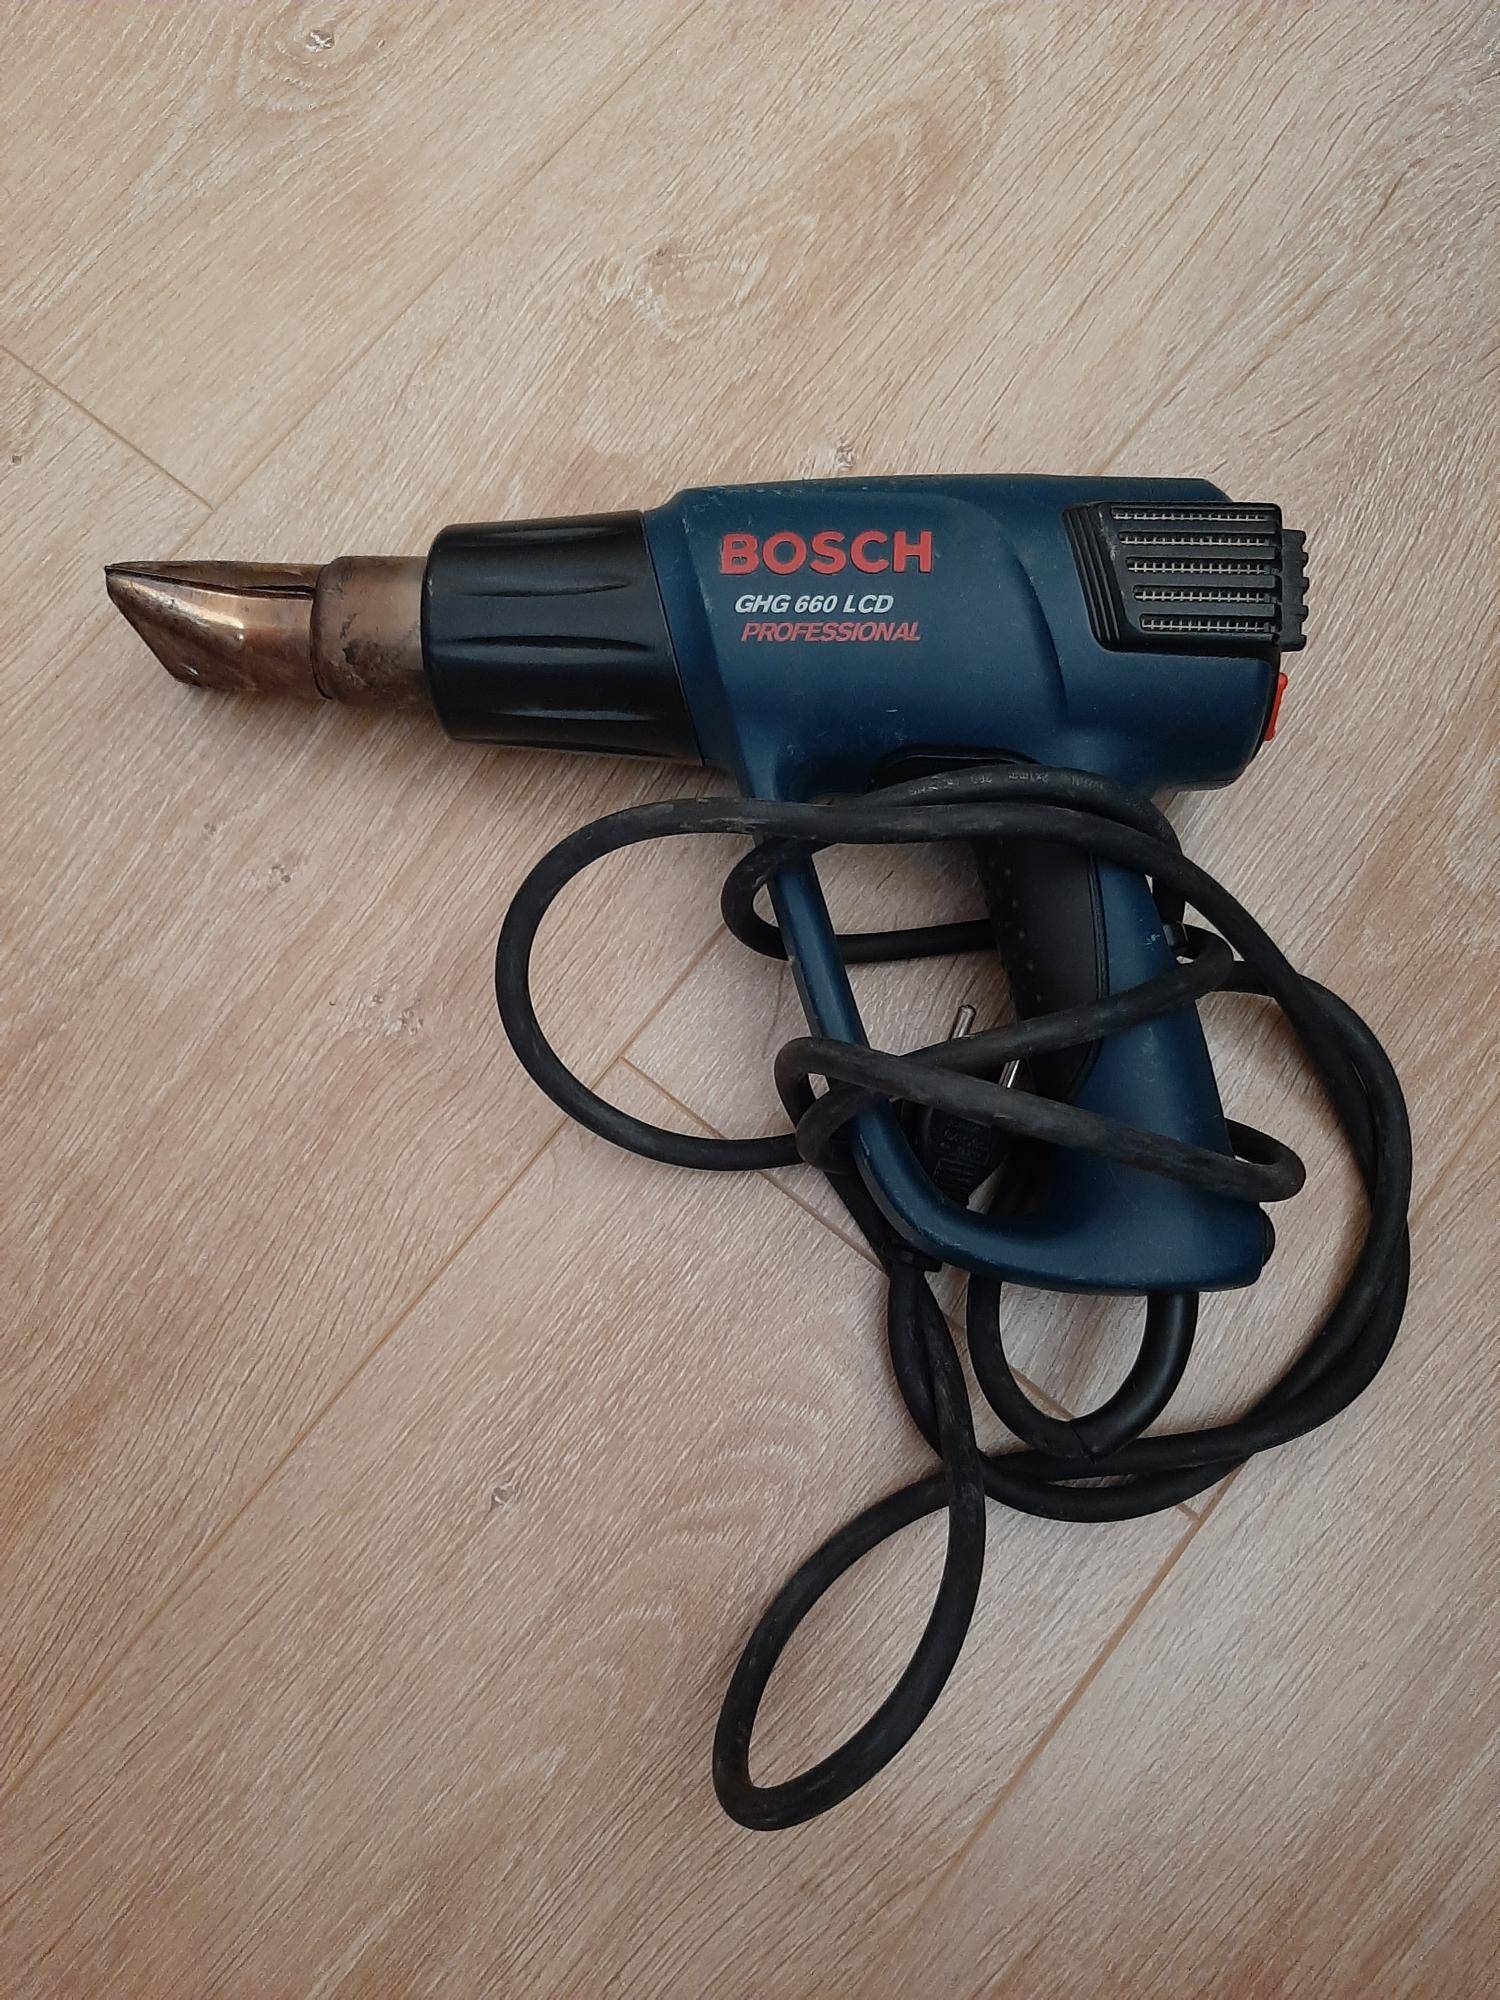 Bosch gws 660: подробный обзор болгарки, технические характеристики, плюсы и минусы, достоинства и недостатки, использование, комплектация, как отличить подделку